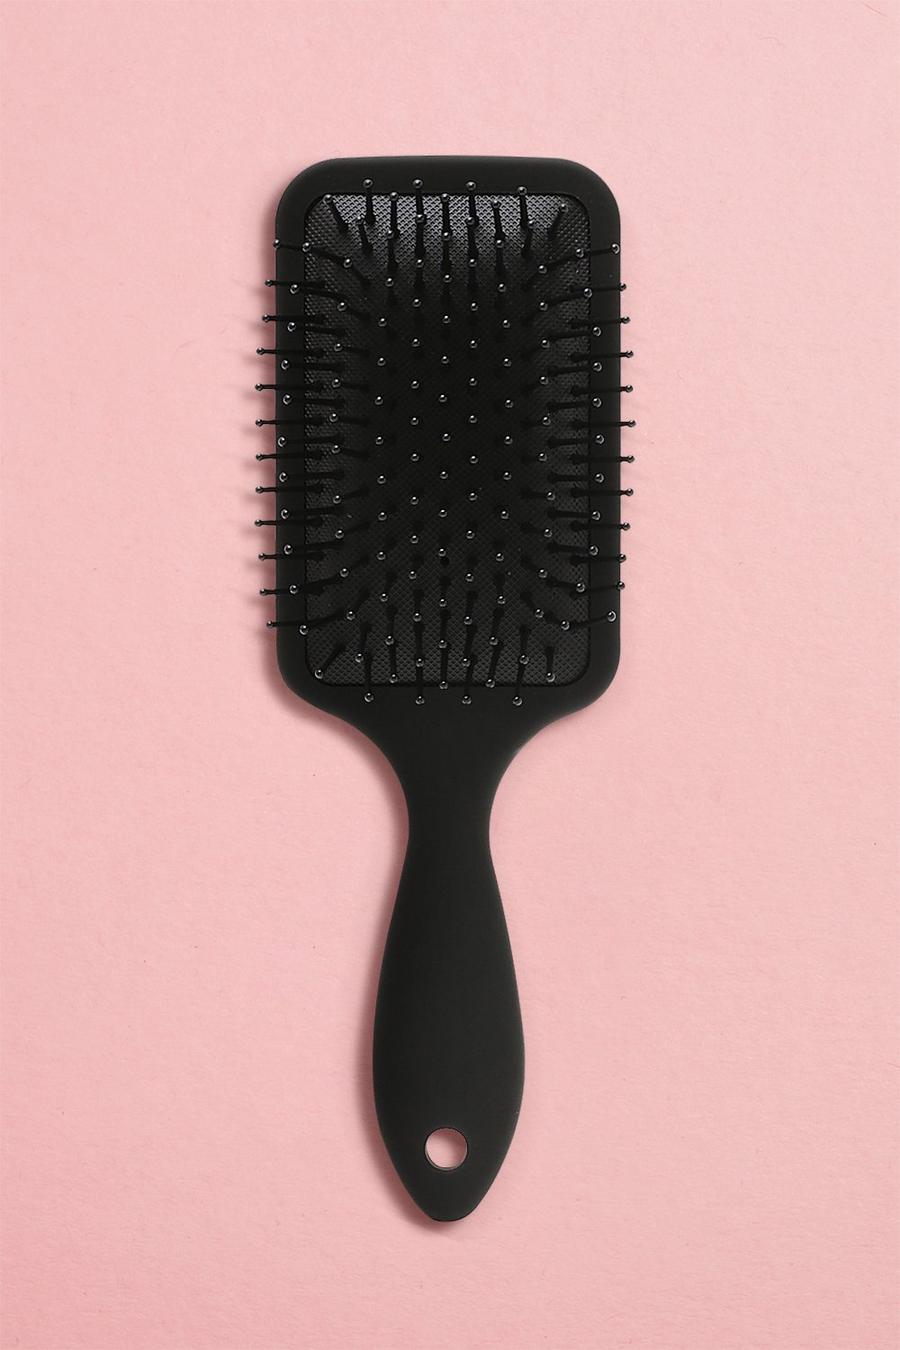 Black Paddle Hair Brush